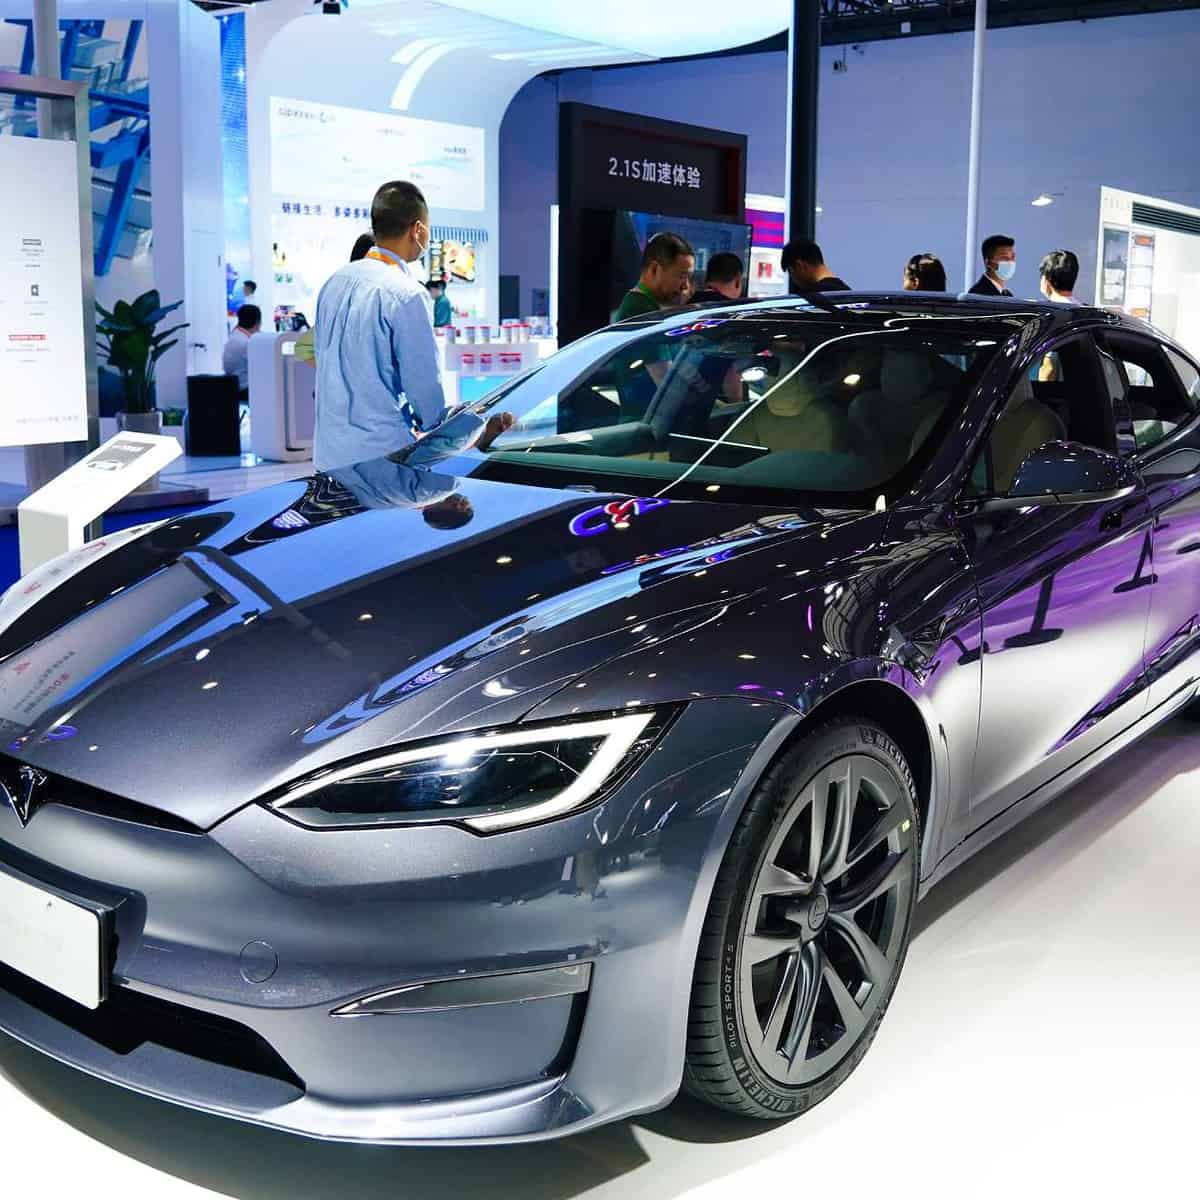 Vehículos de Tesla hechos en China exportados a Corea